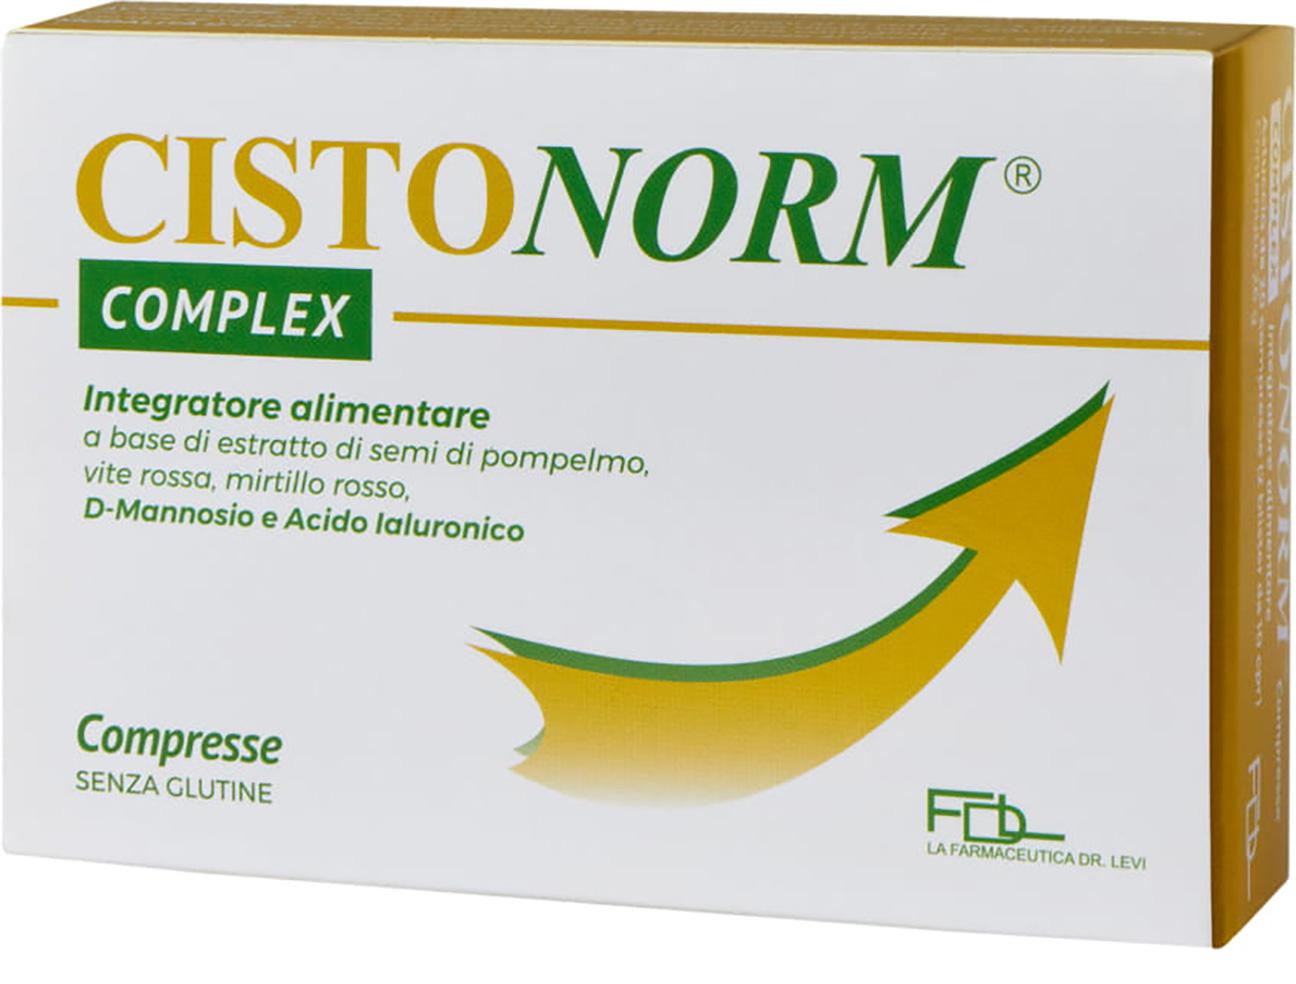 Cistonorm complex 